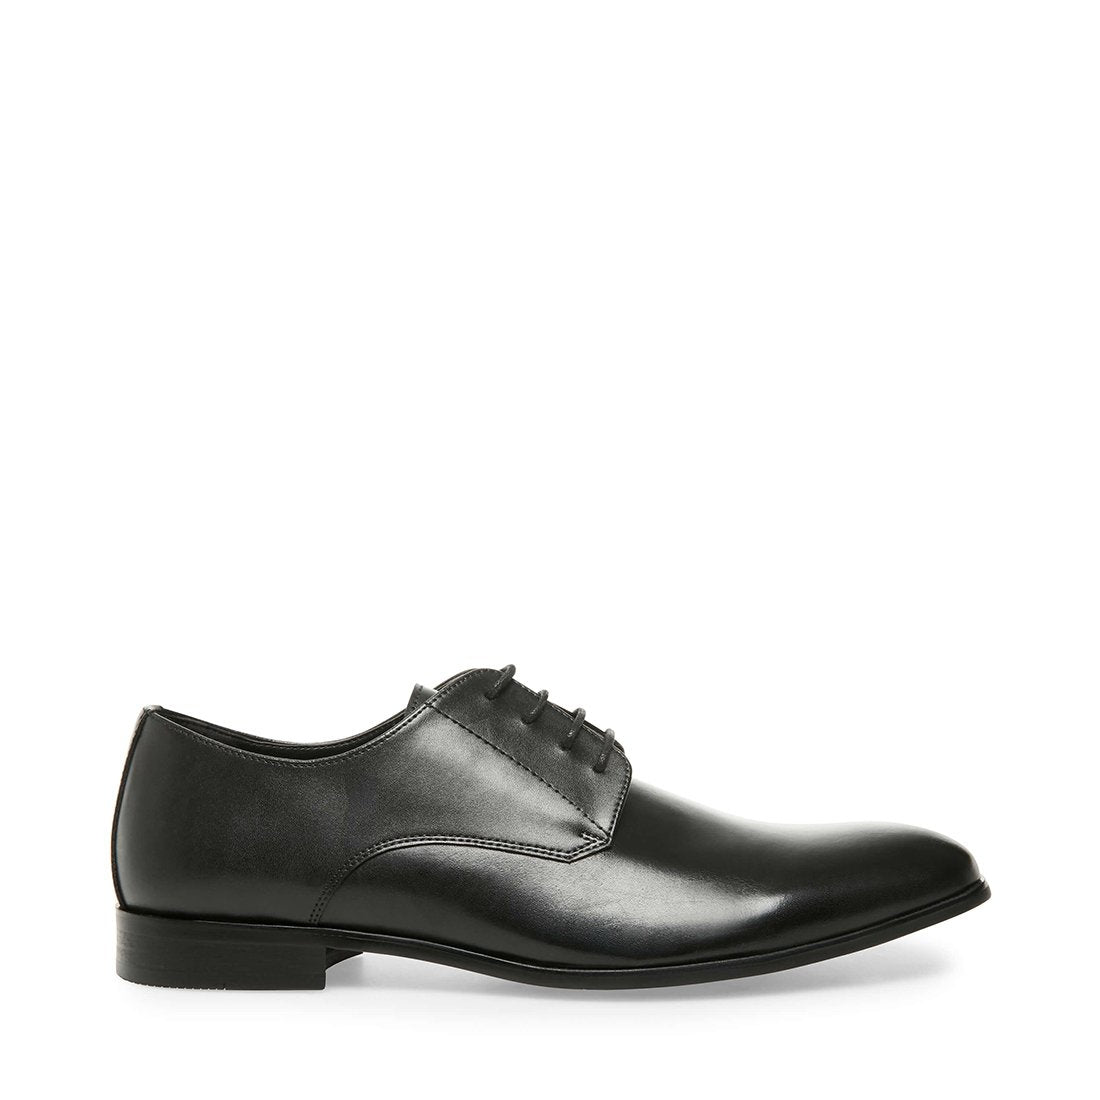 steve madden men's formal shoes